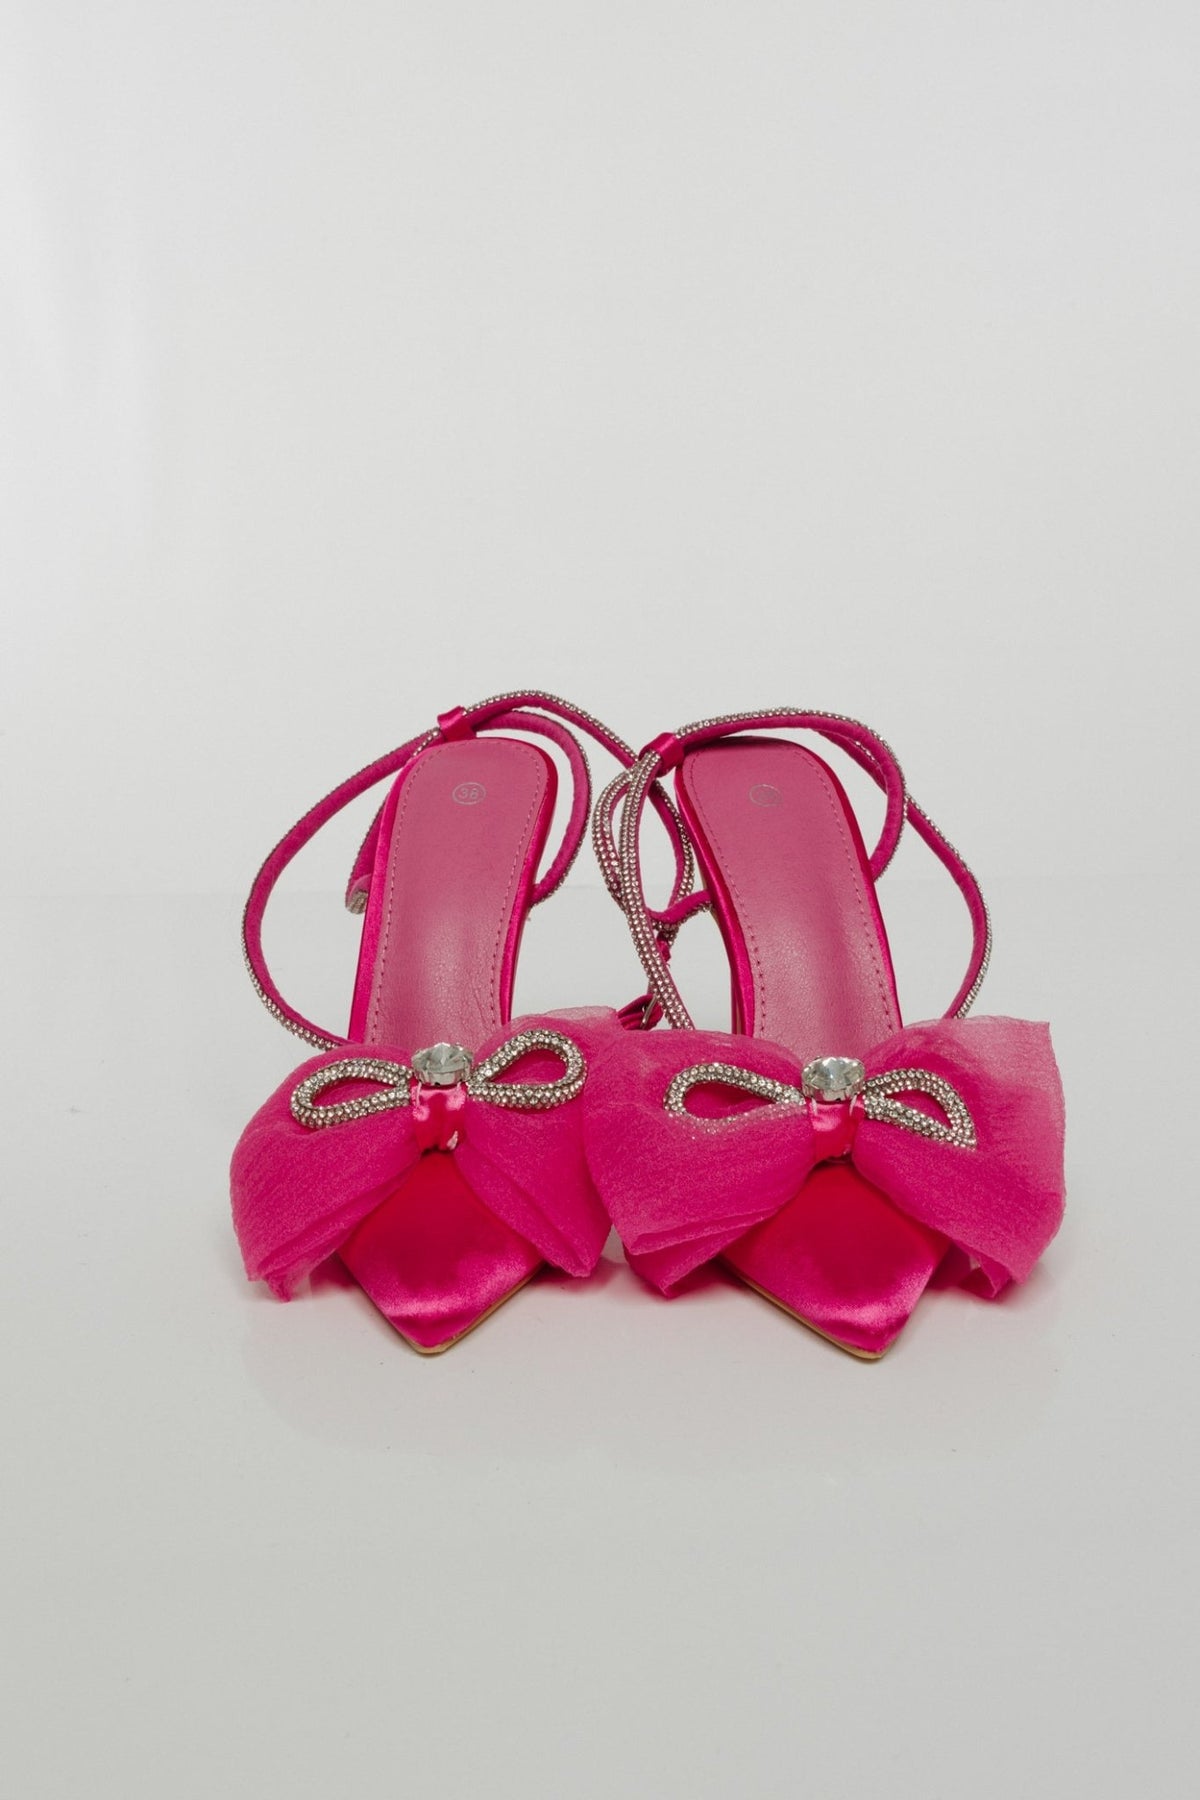 Lauren Bow Heel In Pink - The Walk in Wardrobe